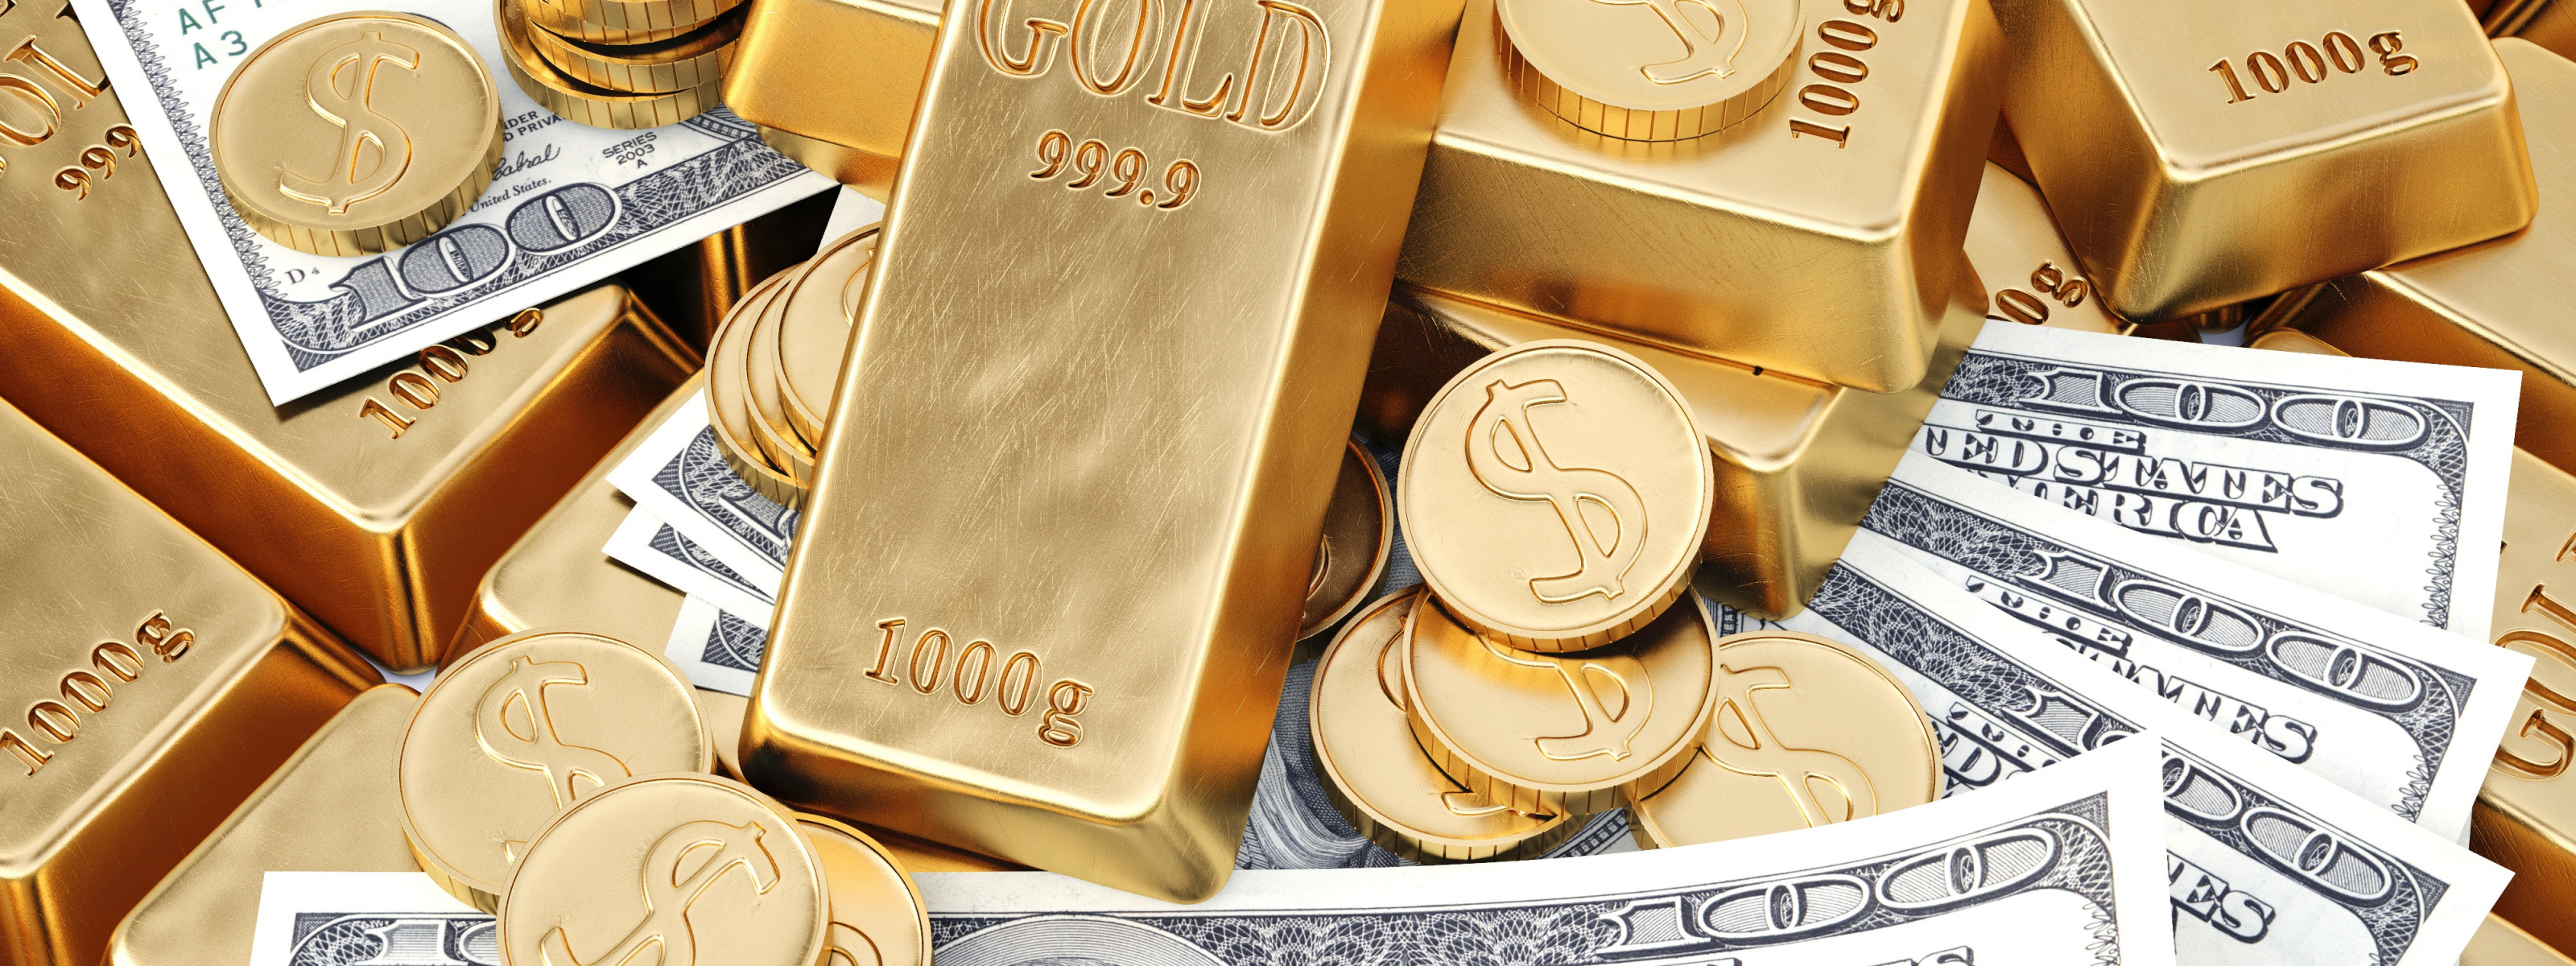 1000 золота в долларах. Деньги золото. Деньги золото богатство. Золотые слитки и монеты. Слитки золота и деньги.